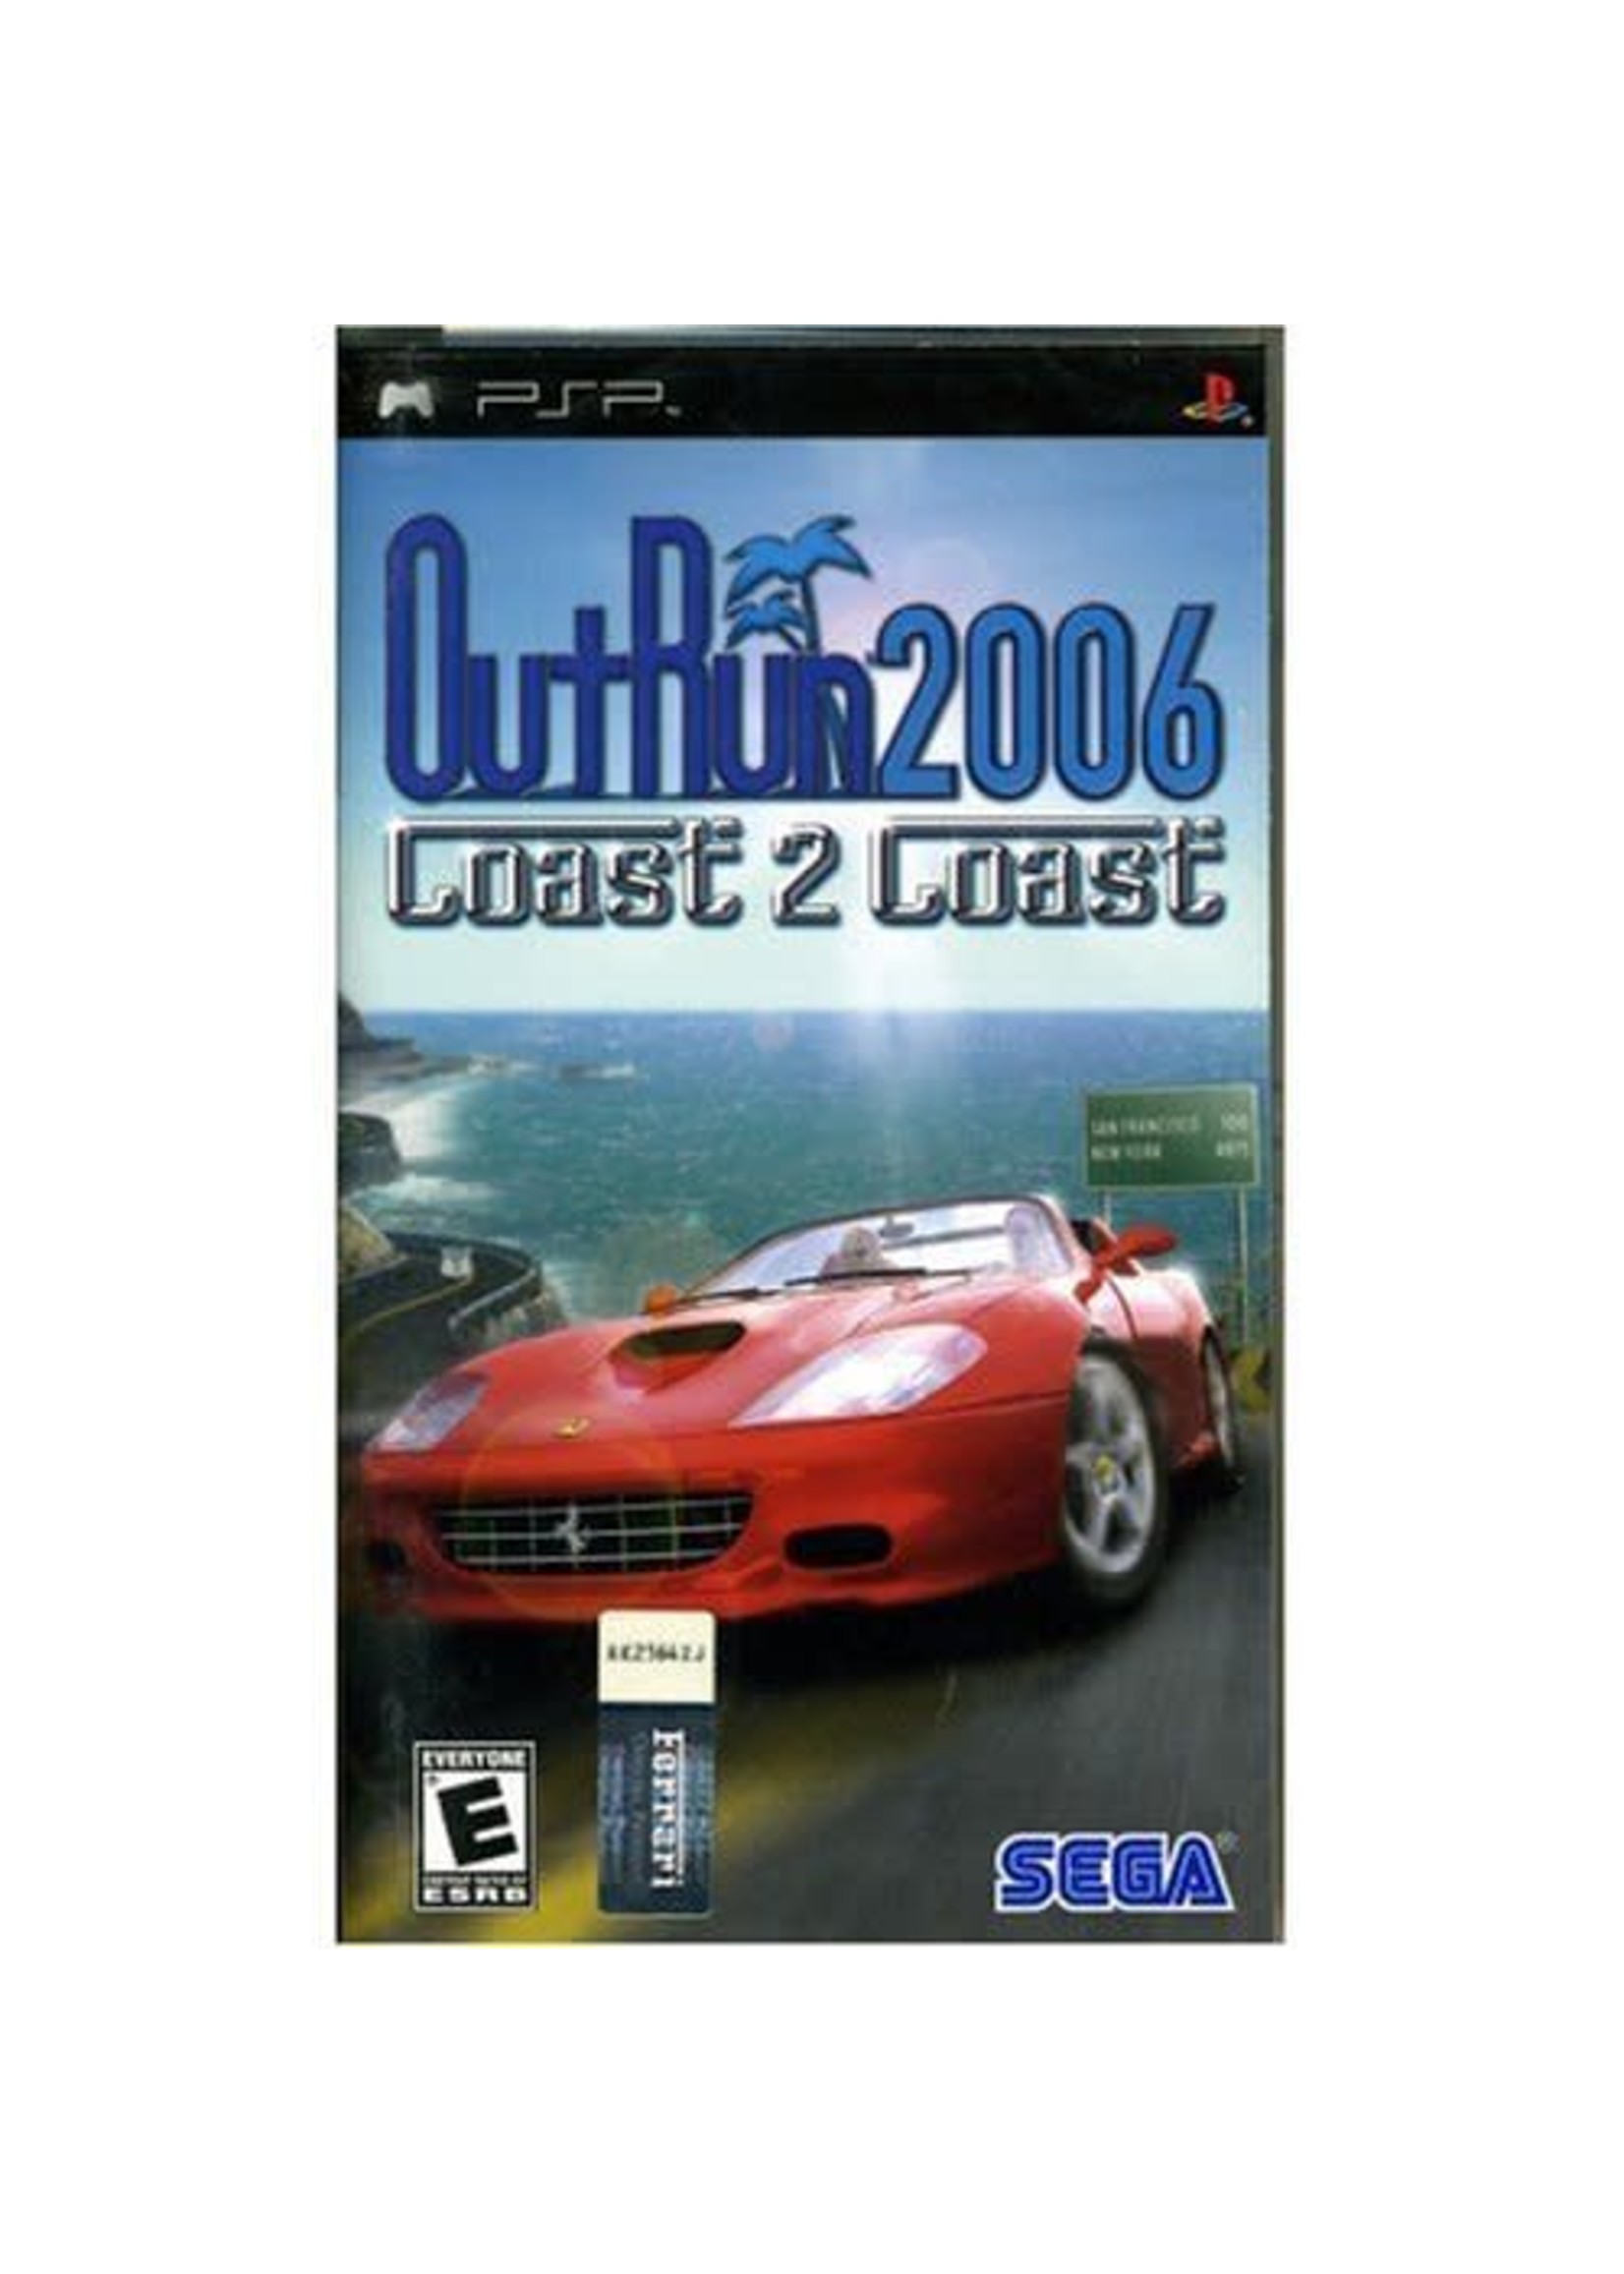 Outrun 2006 coast. Outrun 2006 Coast 2 Coast. Outrun 2006 PSP. Outrun 2006 Coast 2 Coast обложка. Outrun 2006 Coast 2 Coast PSP.